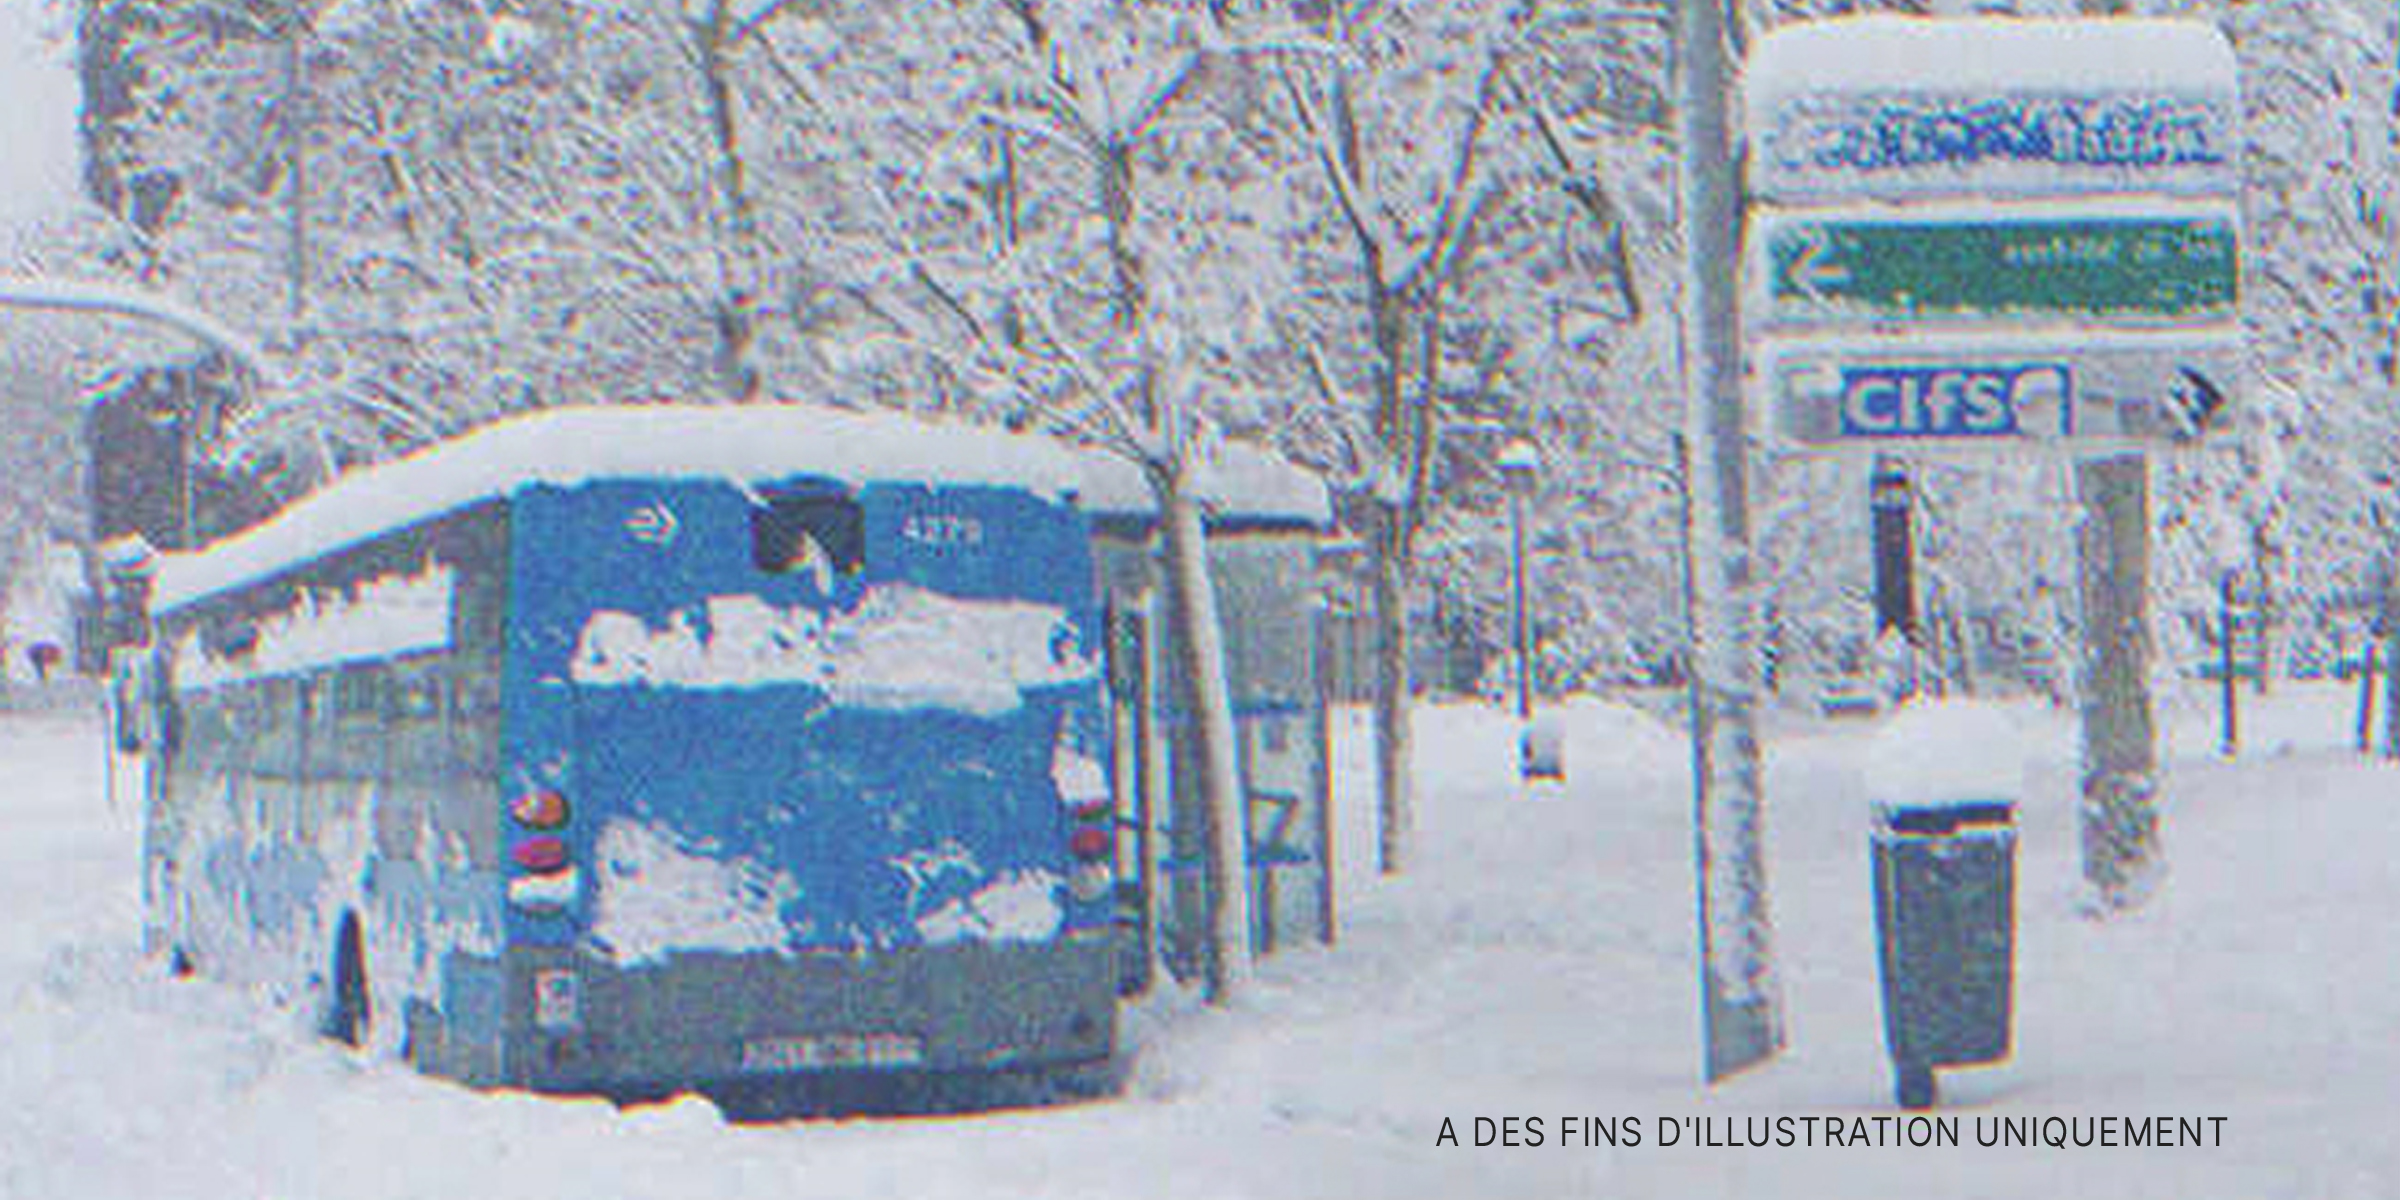 Un bus dans la neige | Source : Shutterstock.com